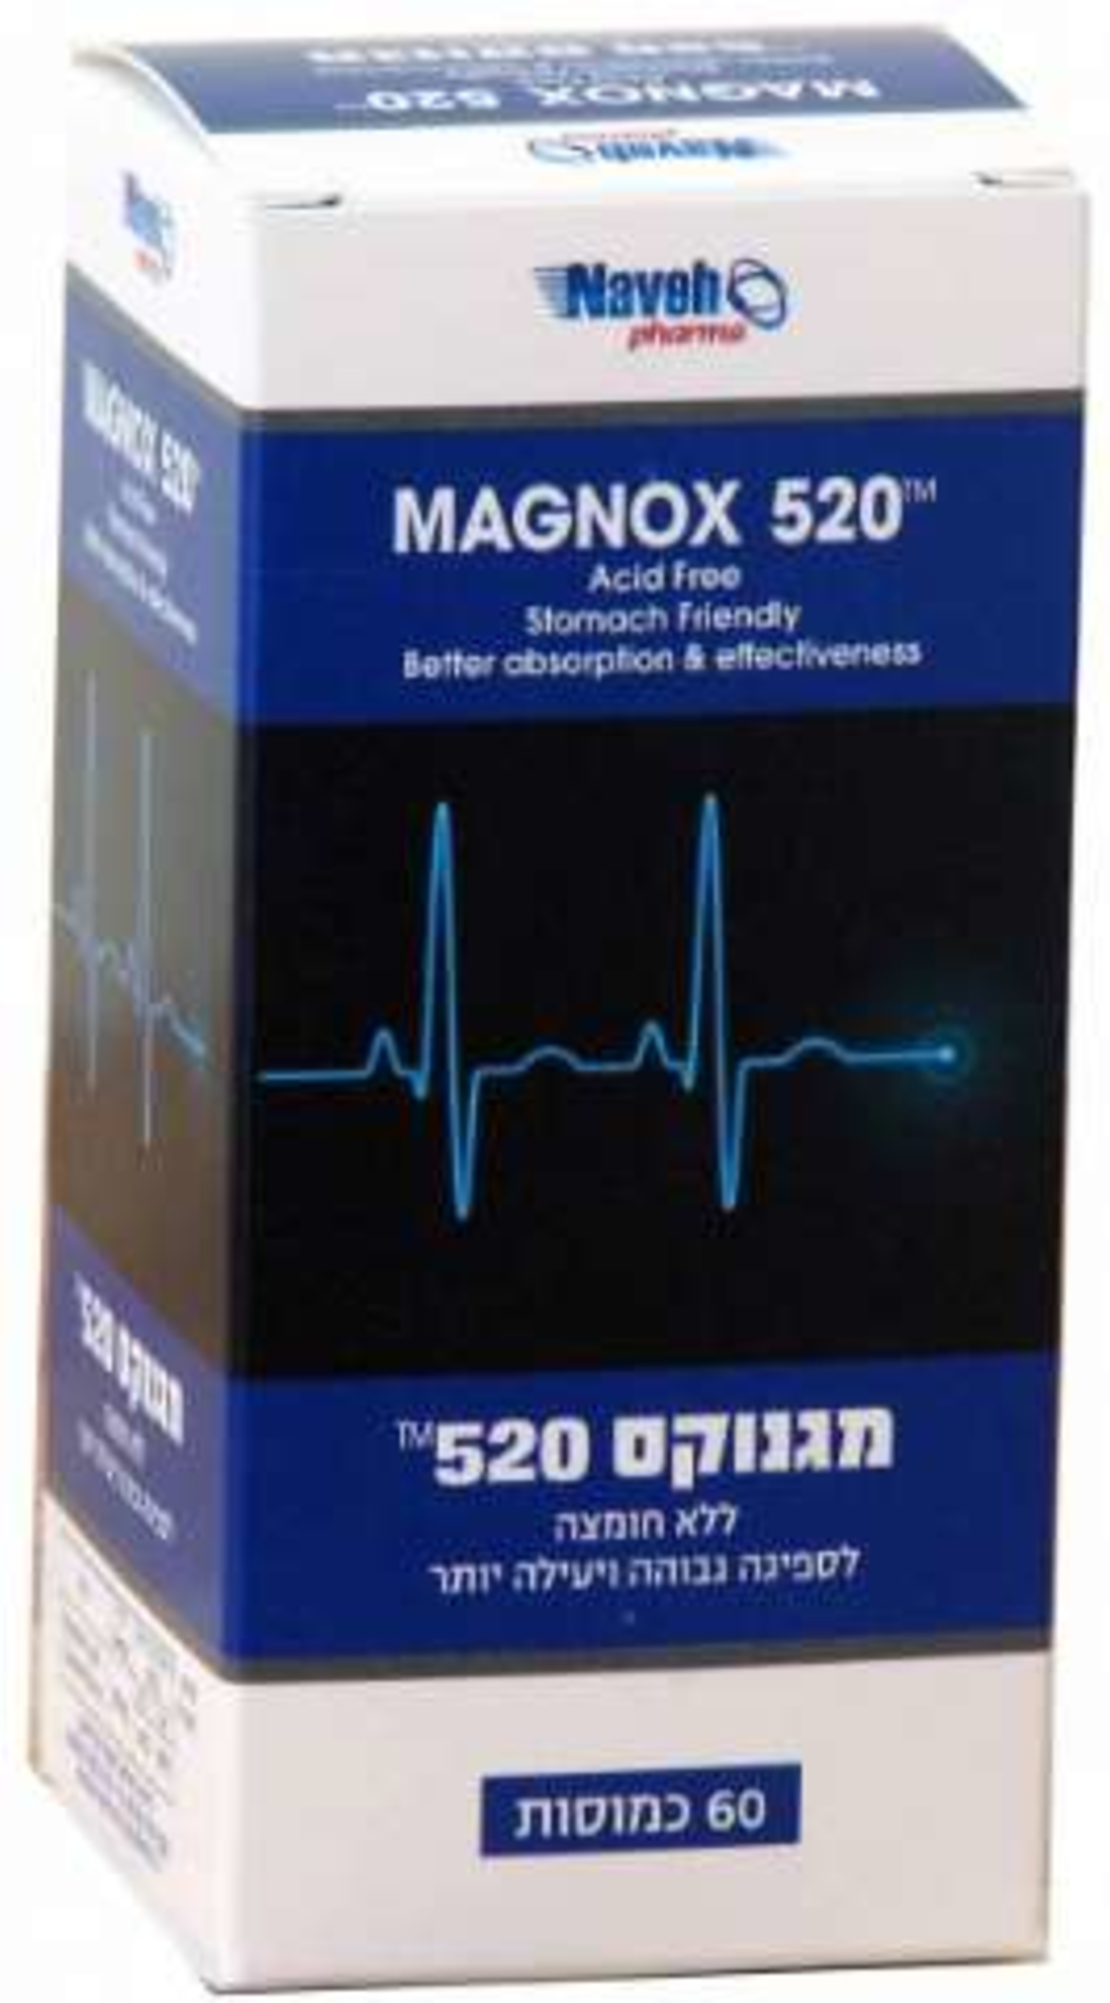 מגנוקס 520 - תוסף מגנזיום מרוכז Magnox 520